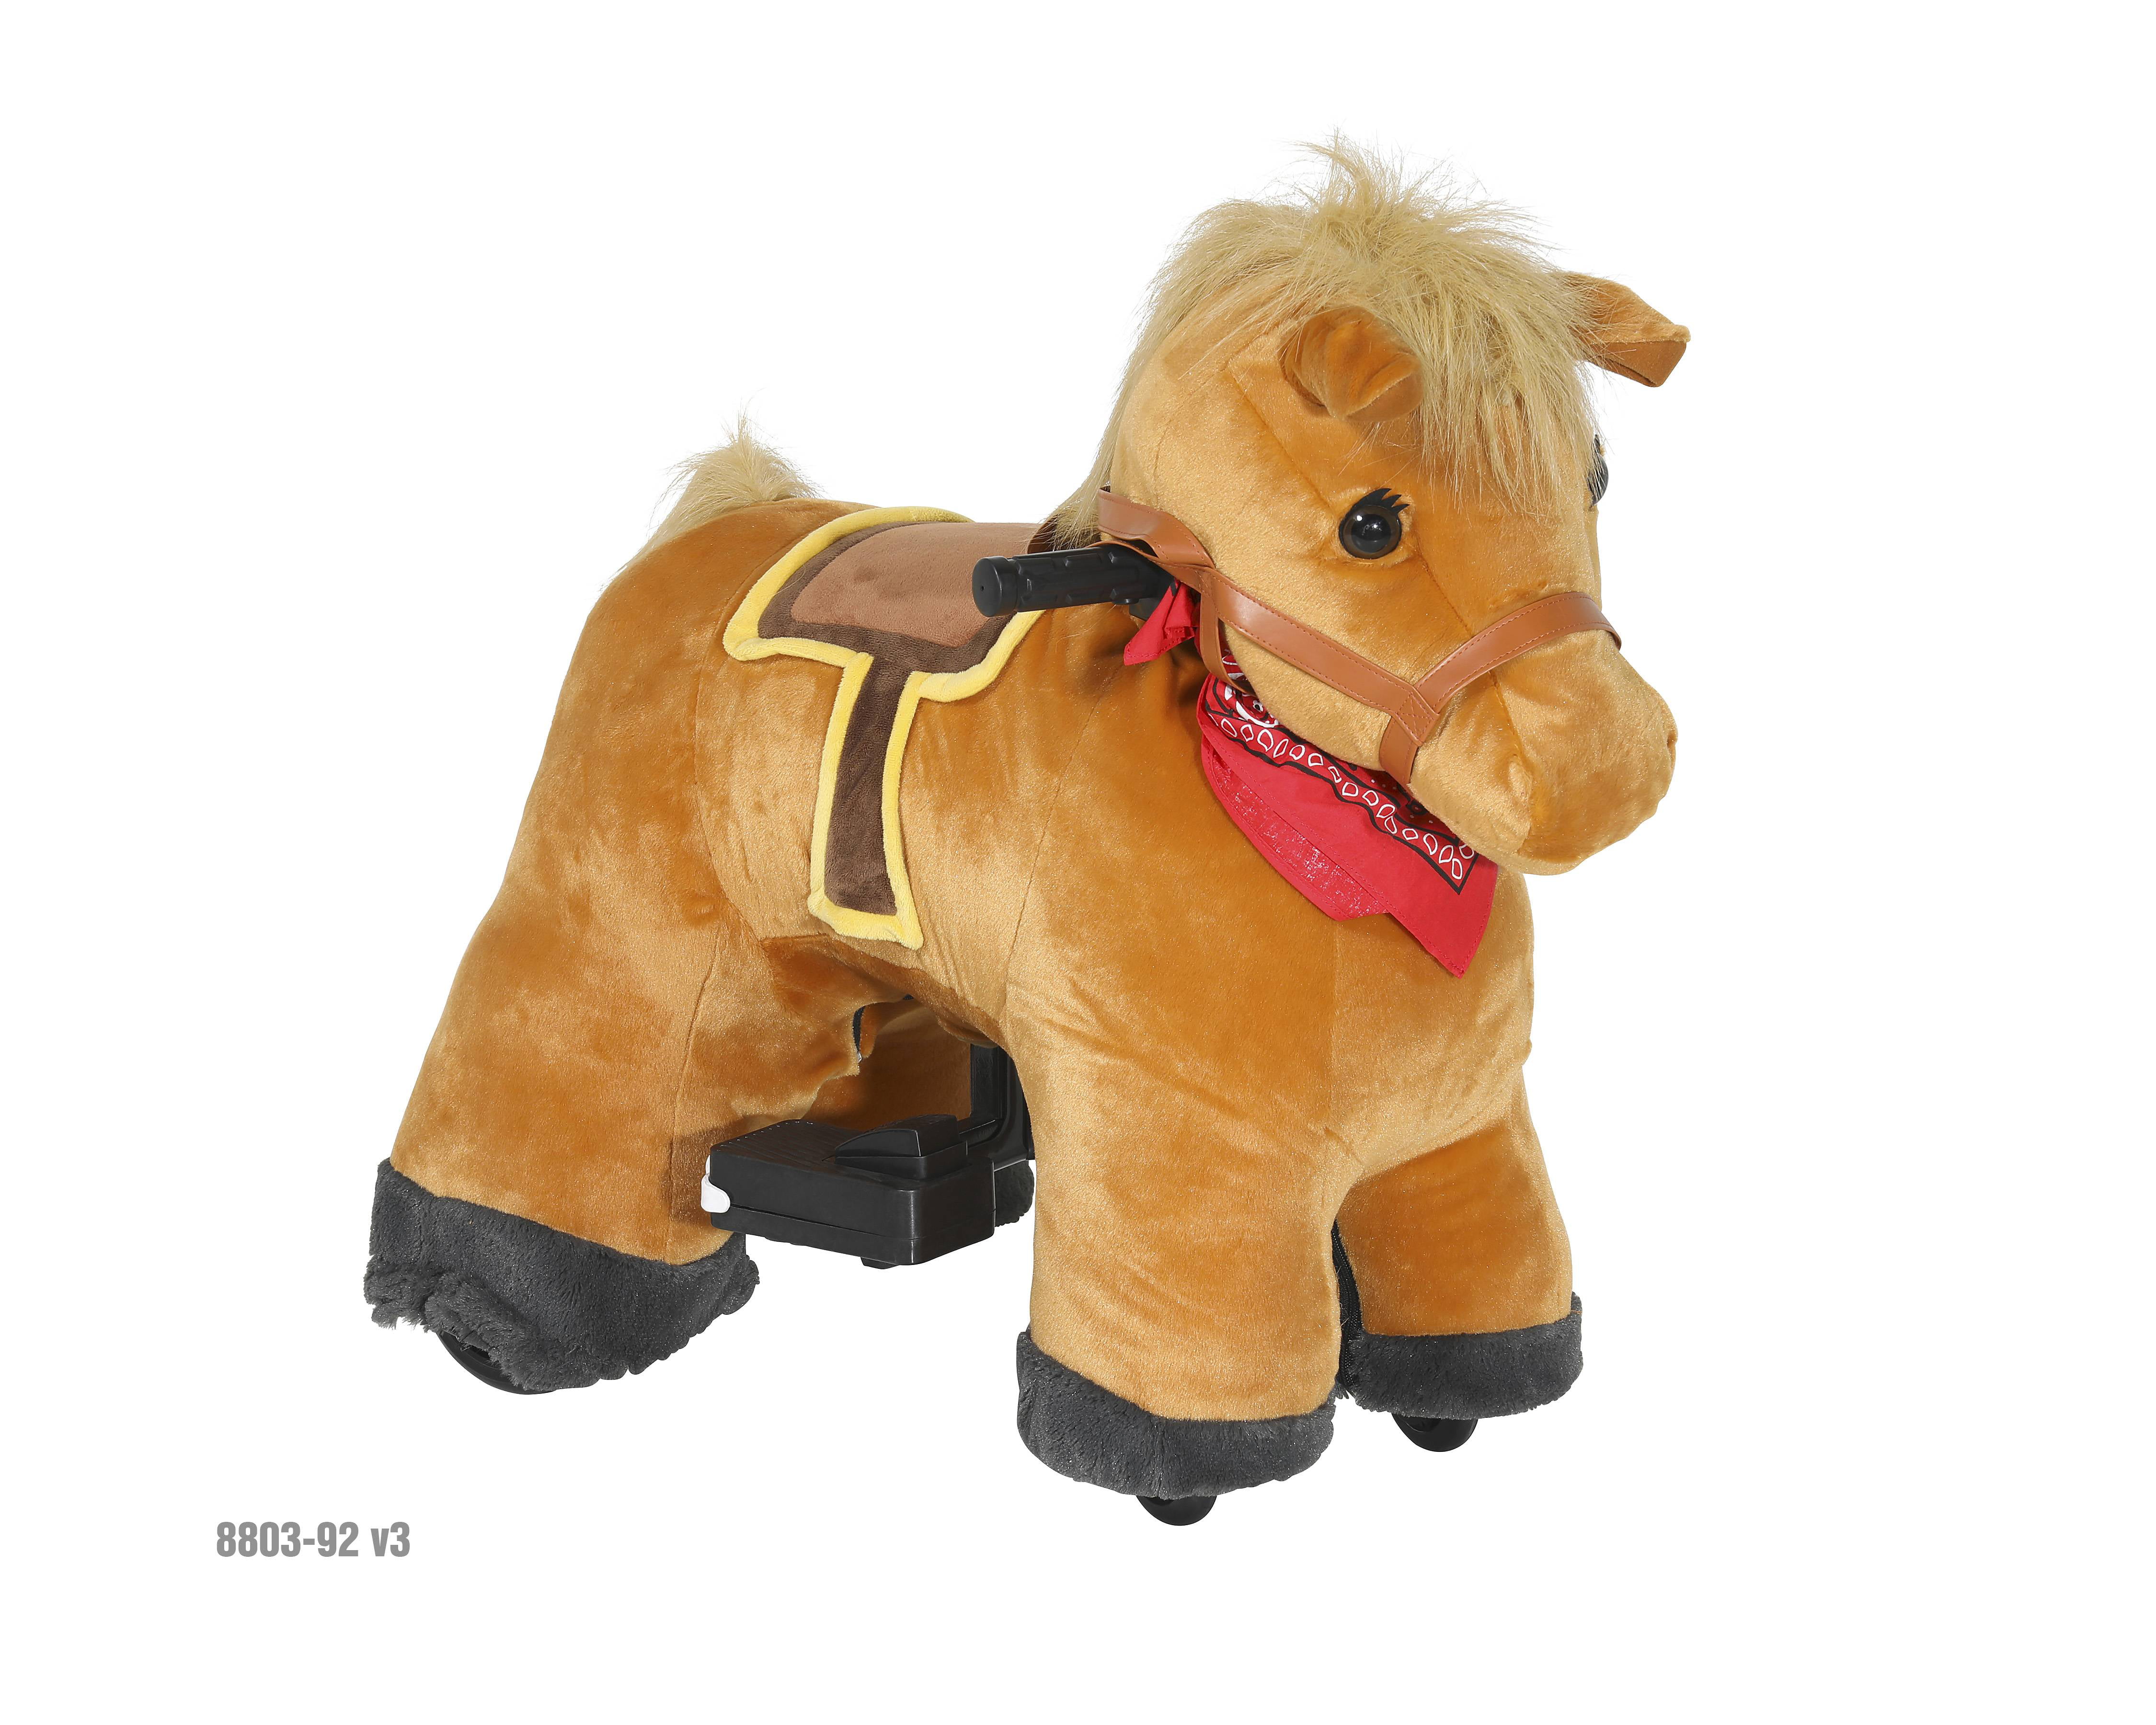 walking pony toy walmart